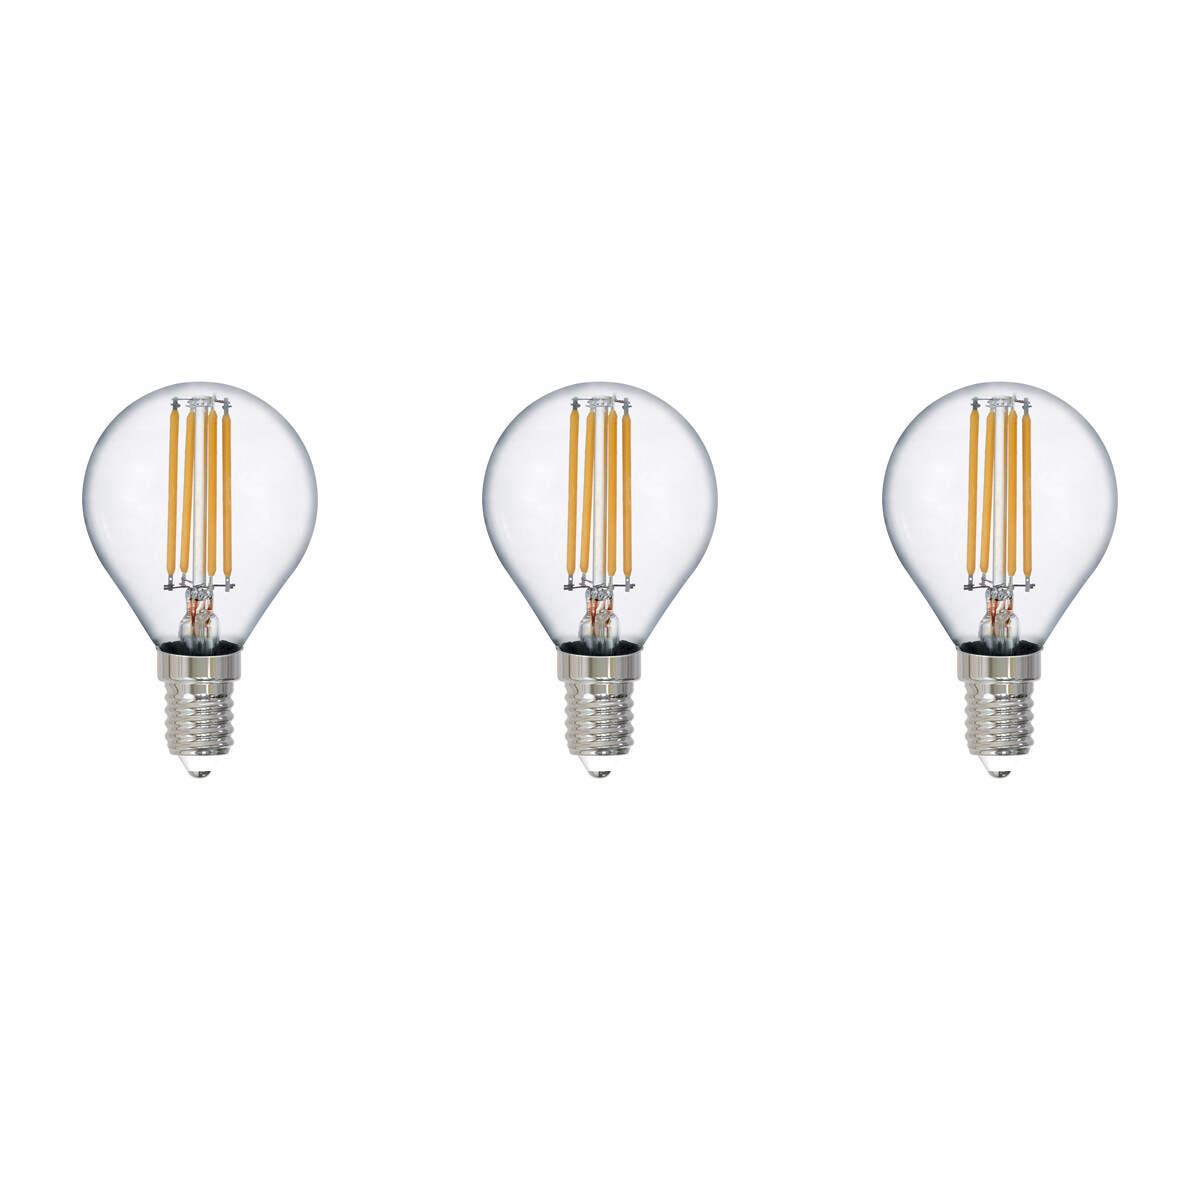 LED Lamp - Filament - Trion Tropin - Set 3 Stuks - E14 Fitting - 2W - Warm Wit-2700K - Transparant H